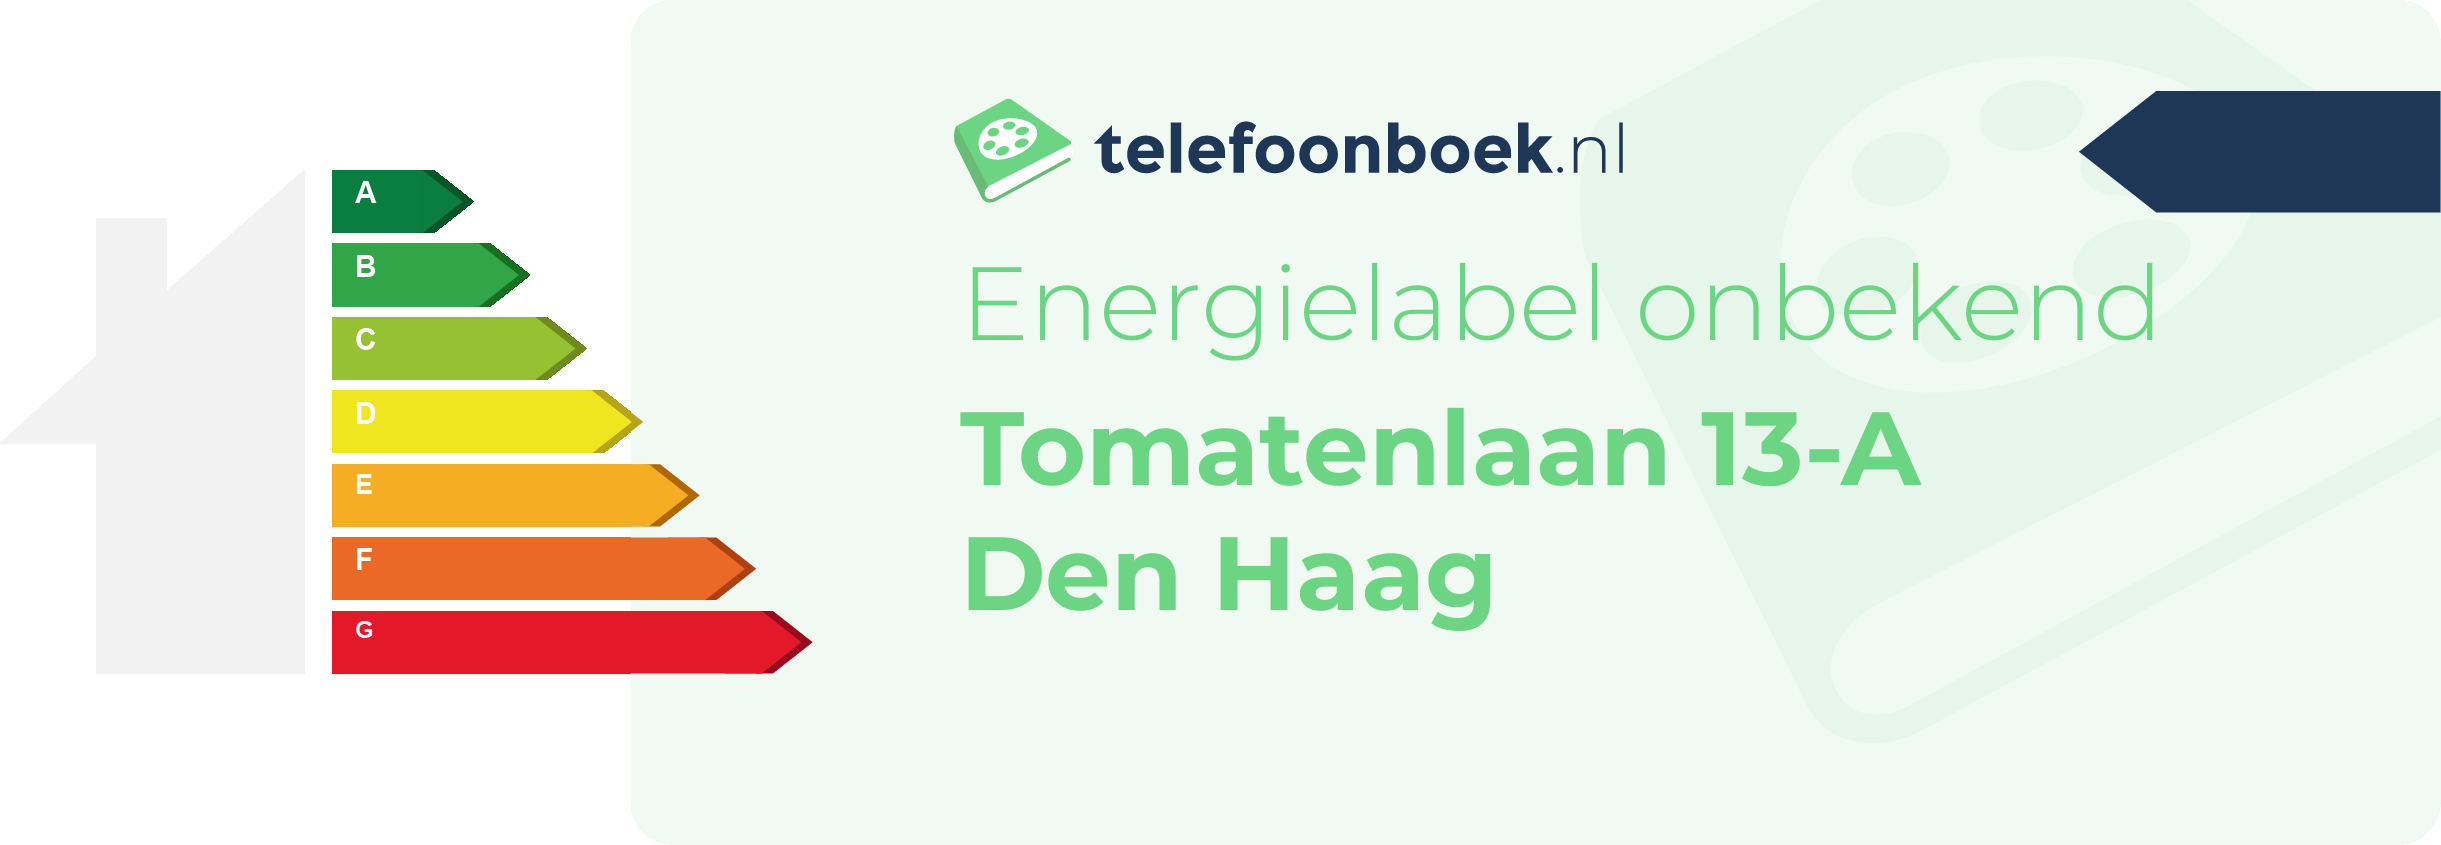 Energielabel Tomatenlaan 13-A Den Haag